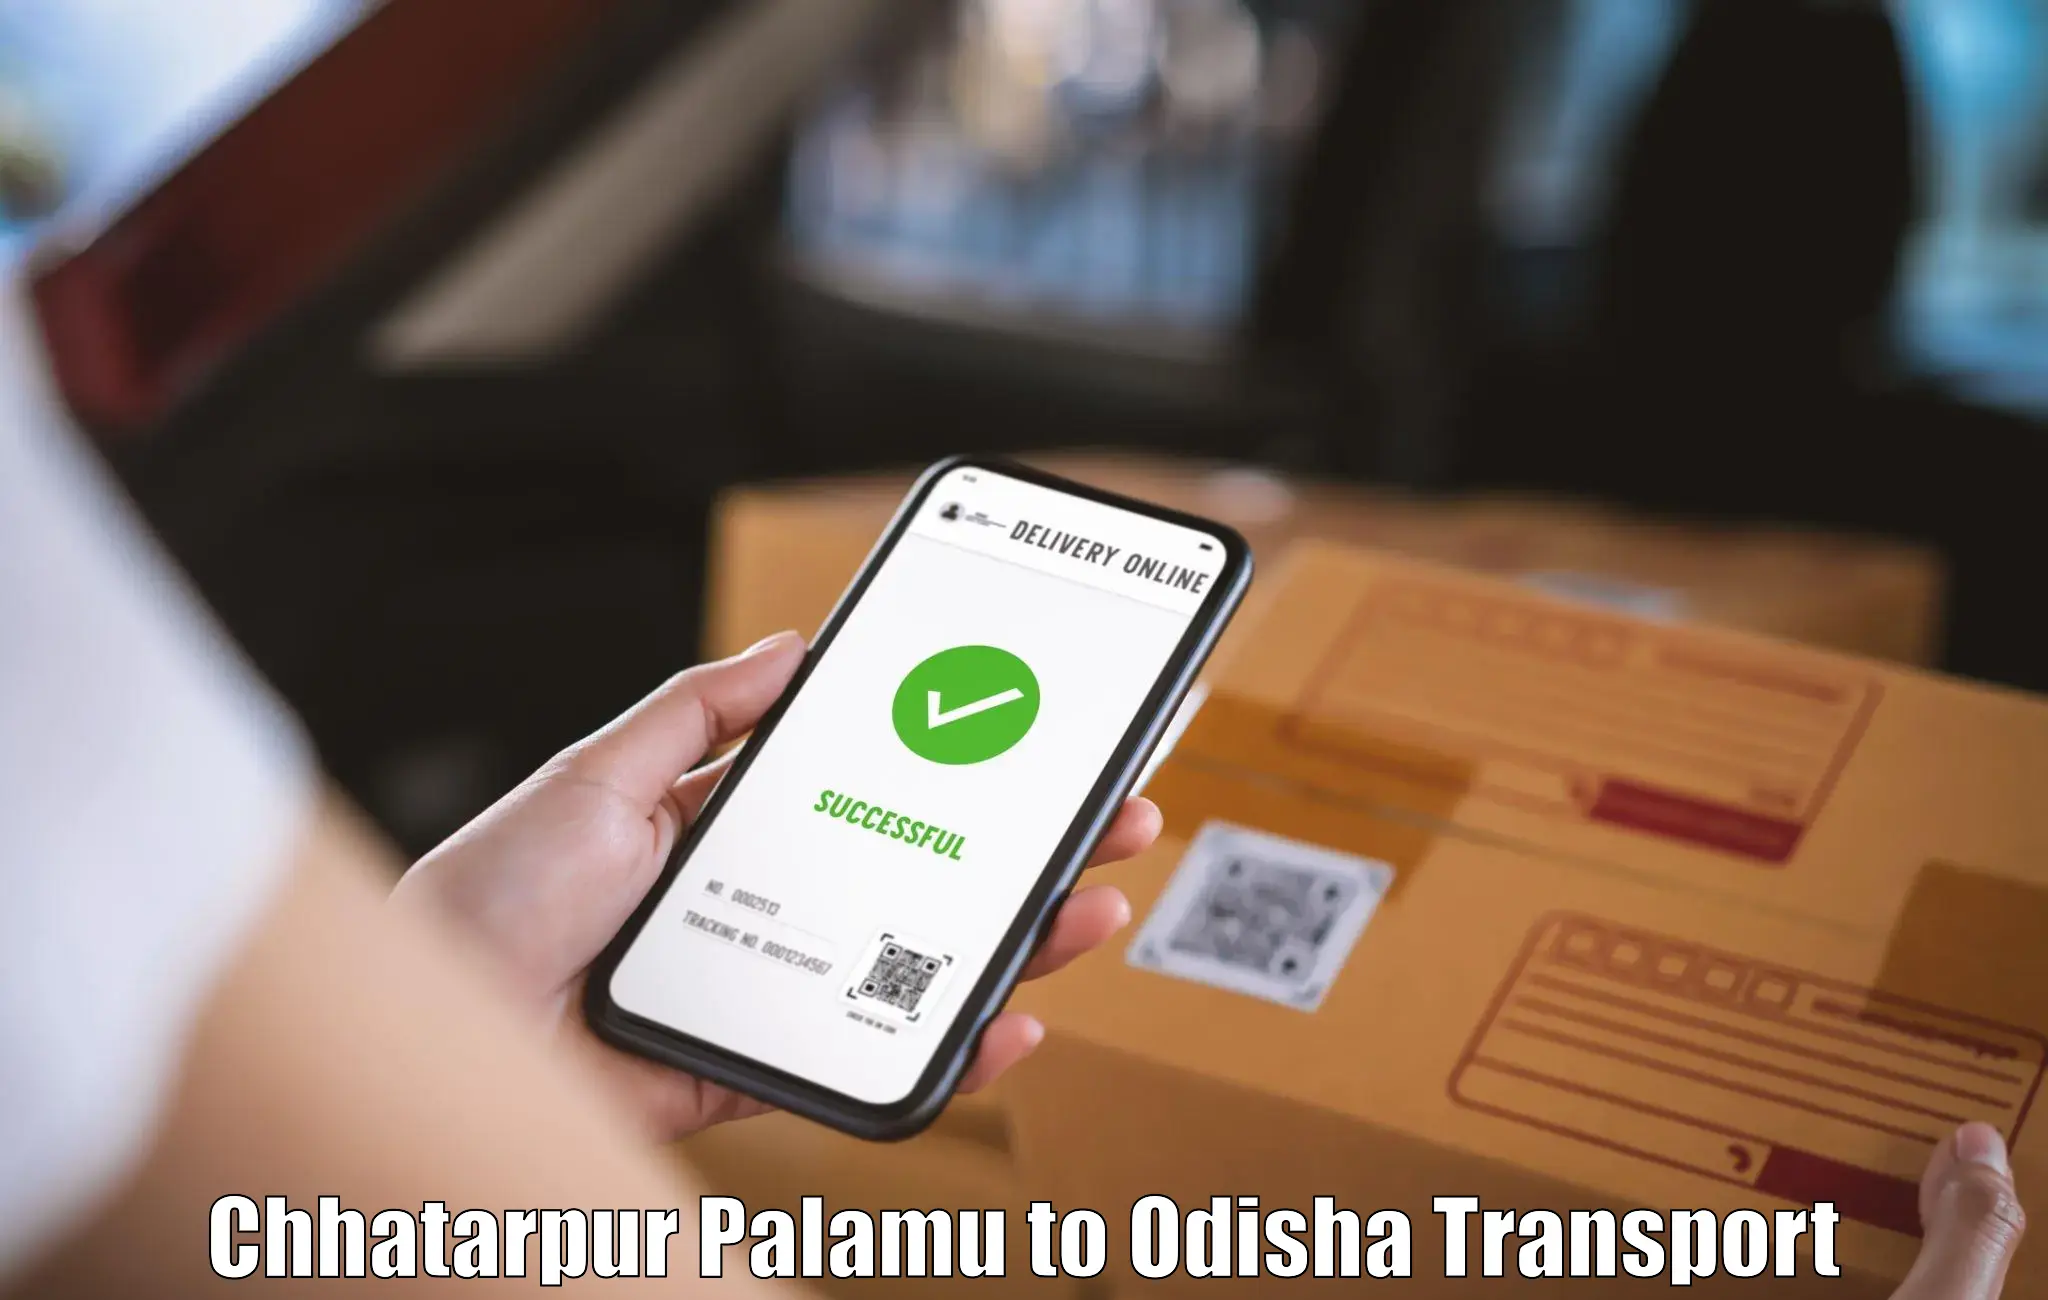 Pick up transport service Chhatarpur Palamu to Babujang